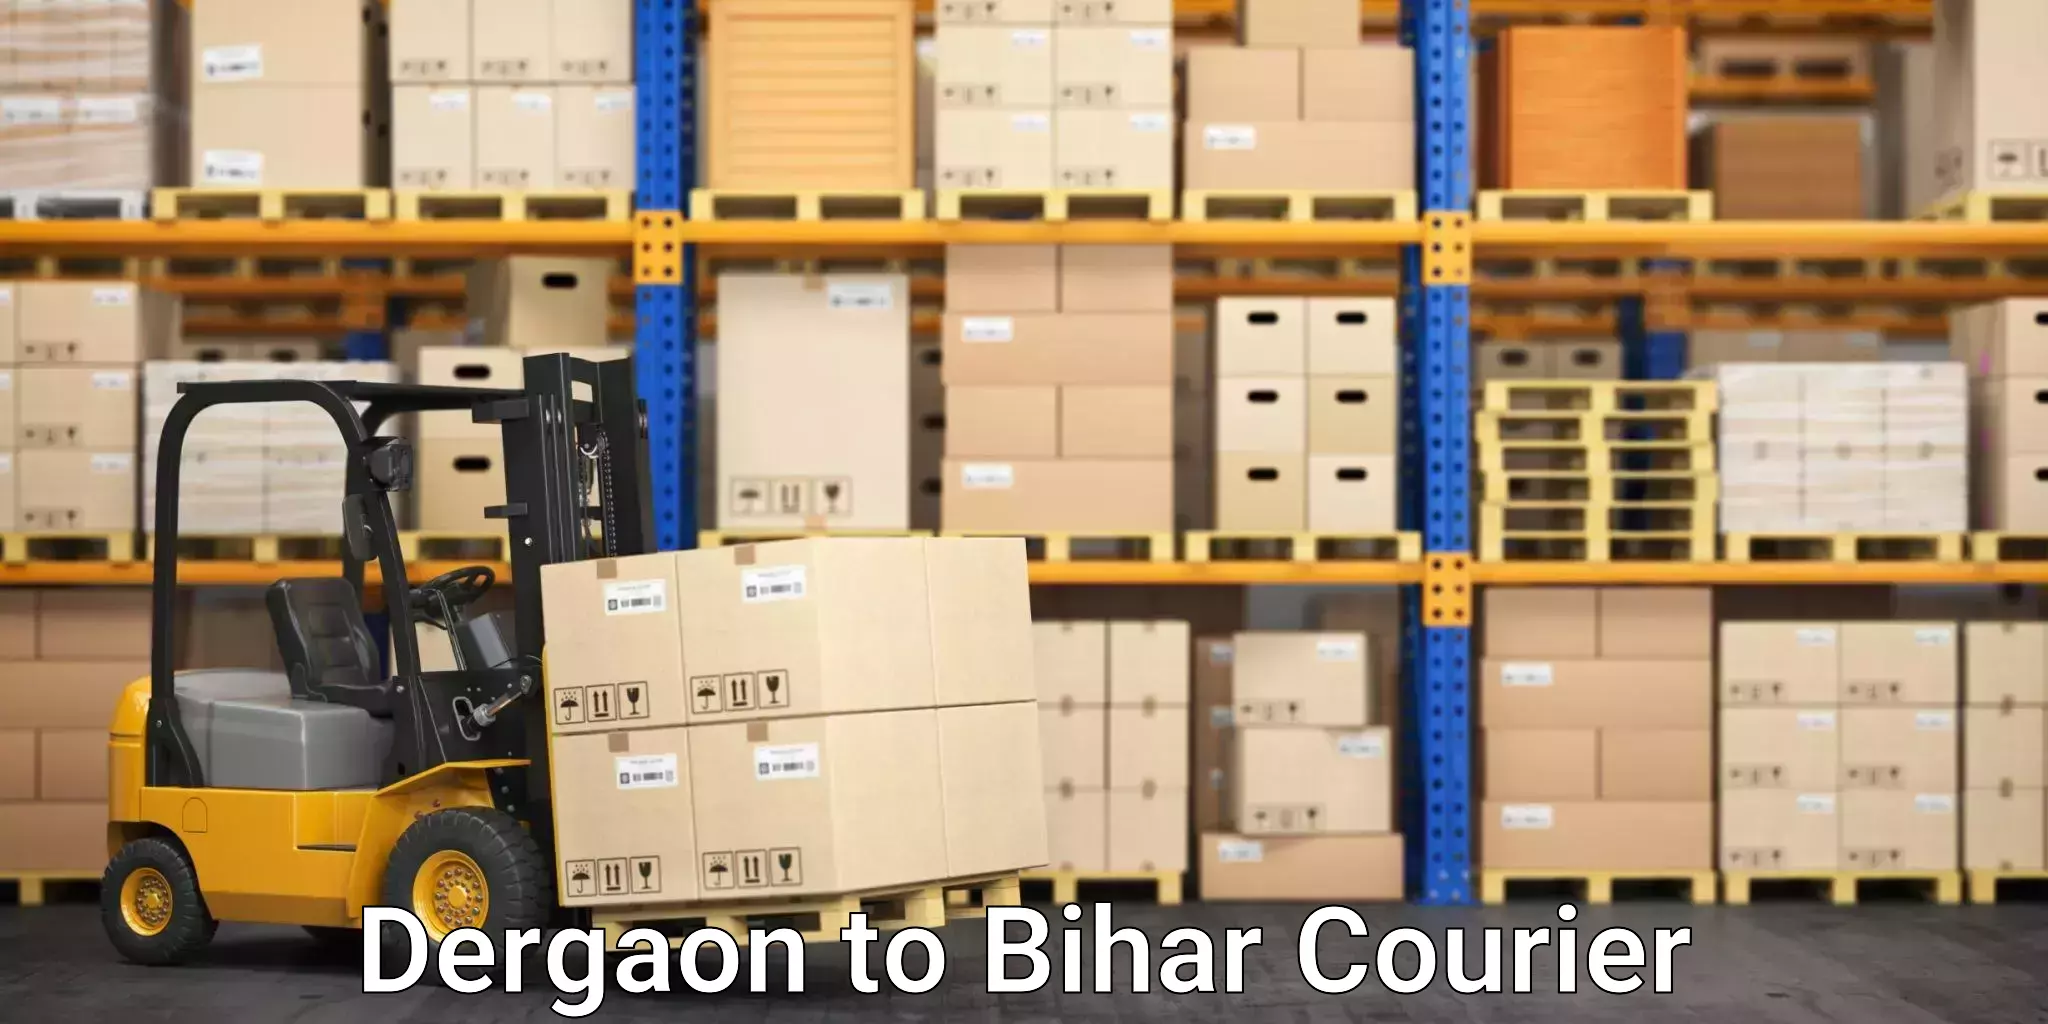 24-hour courier service Dergaon to Dinara